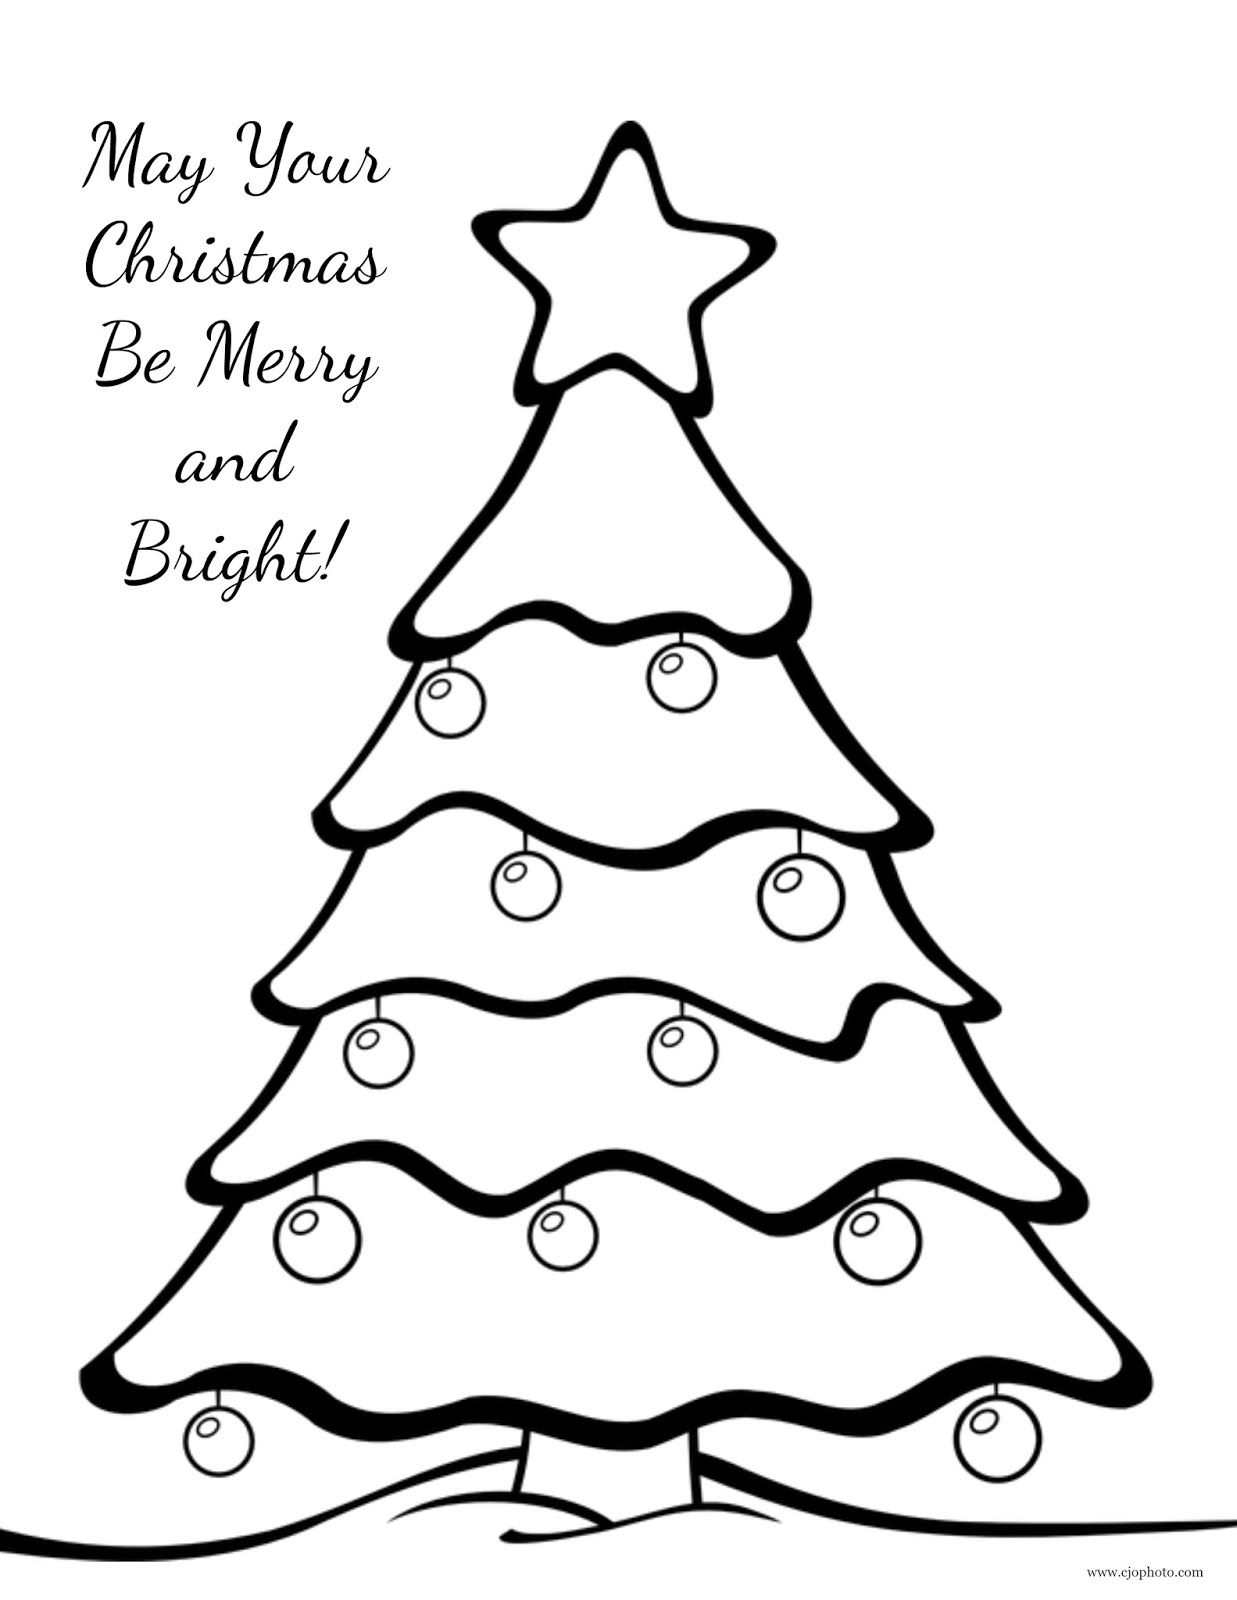 CJO Photo: Christmas Coloring Page: Christmas Tree